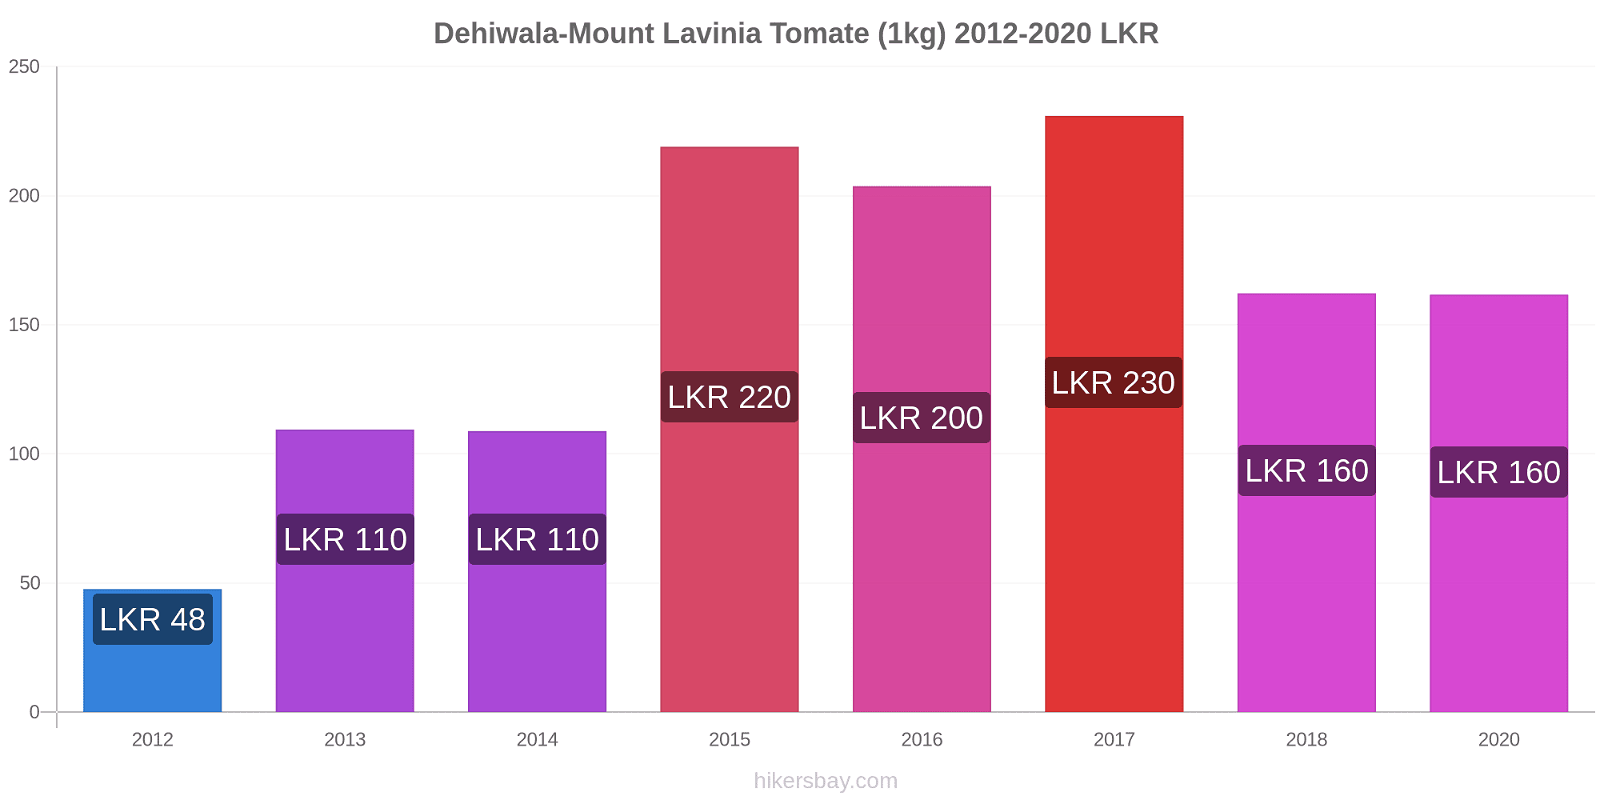 Dehiwala-Mount Lavinia cambios de precios Tomate (1kg) hikersbay.com